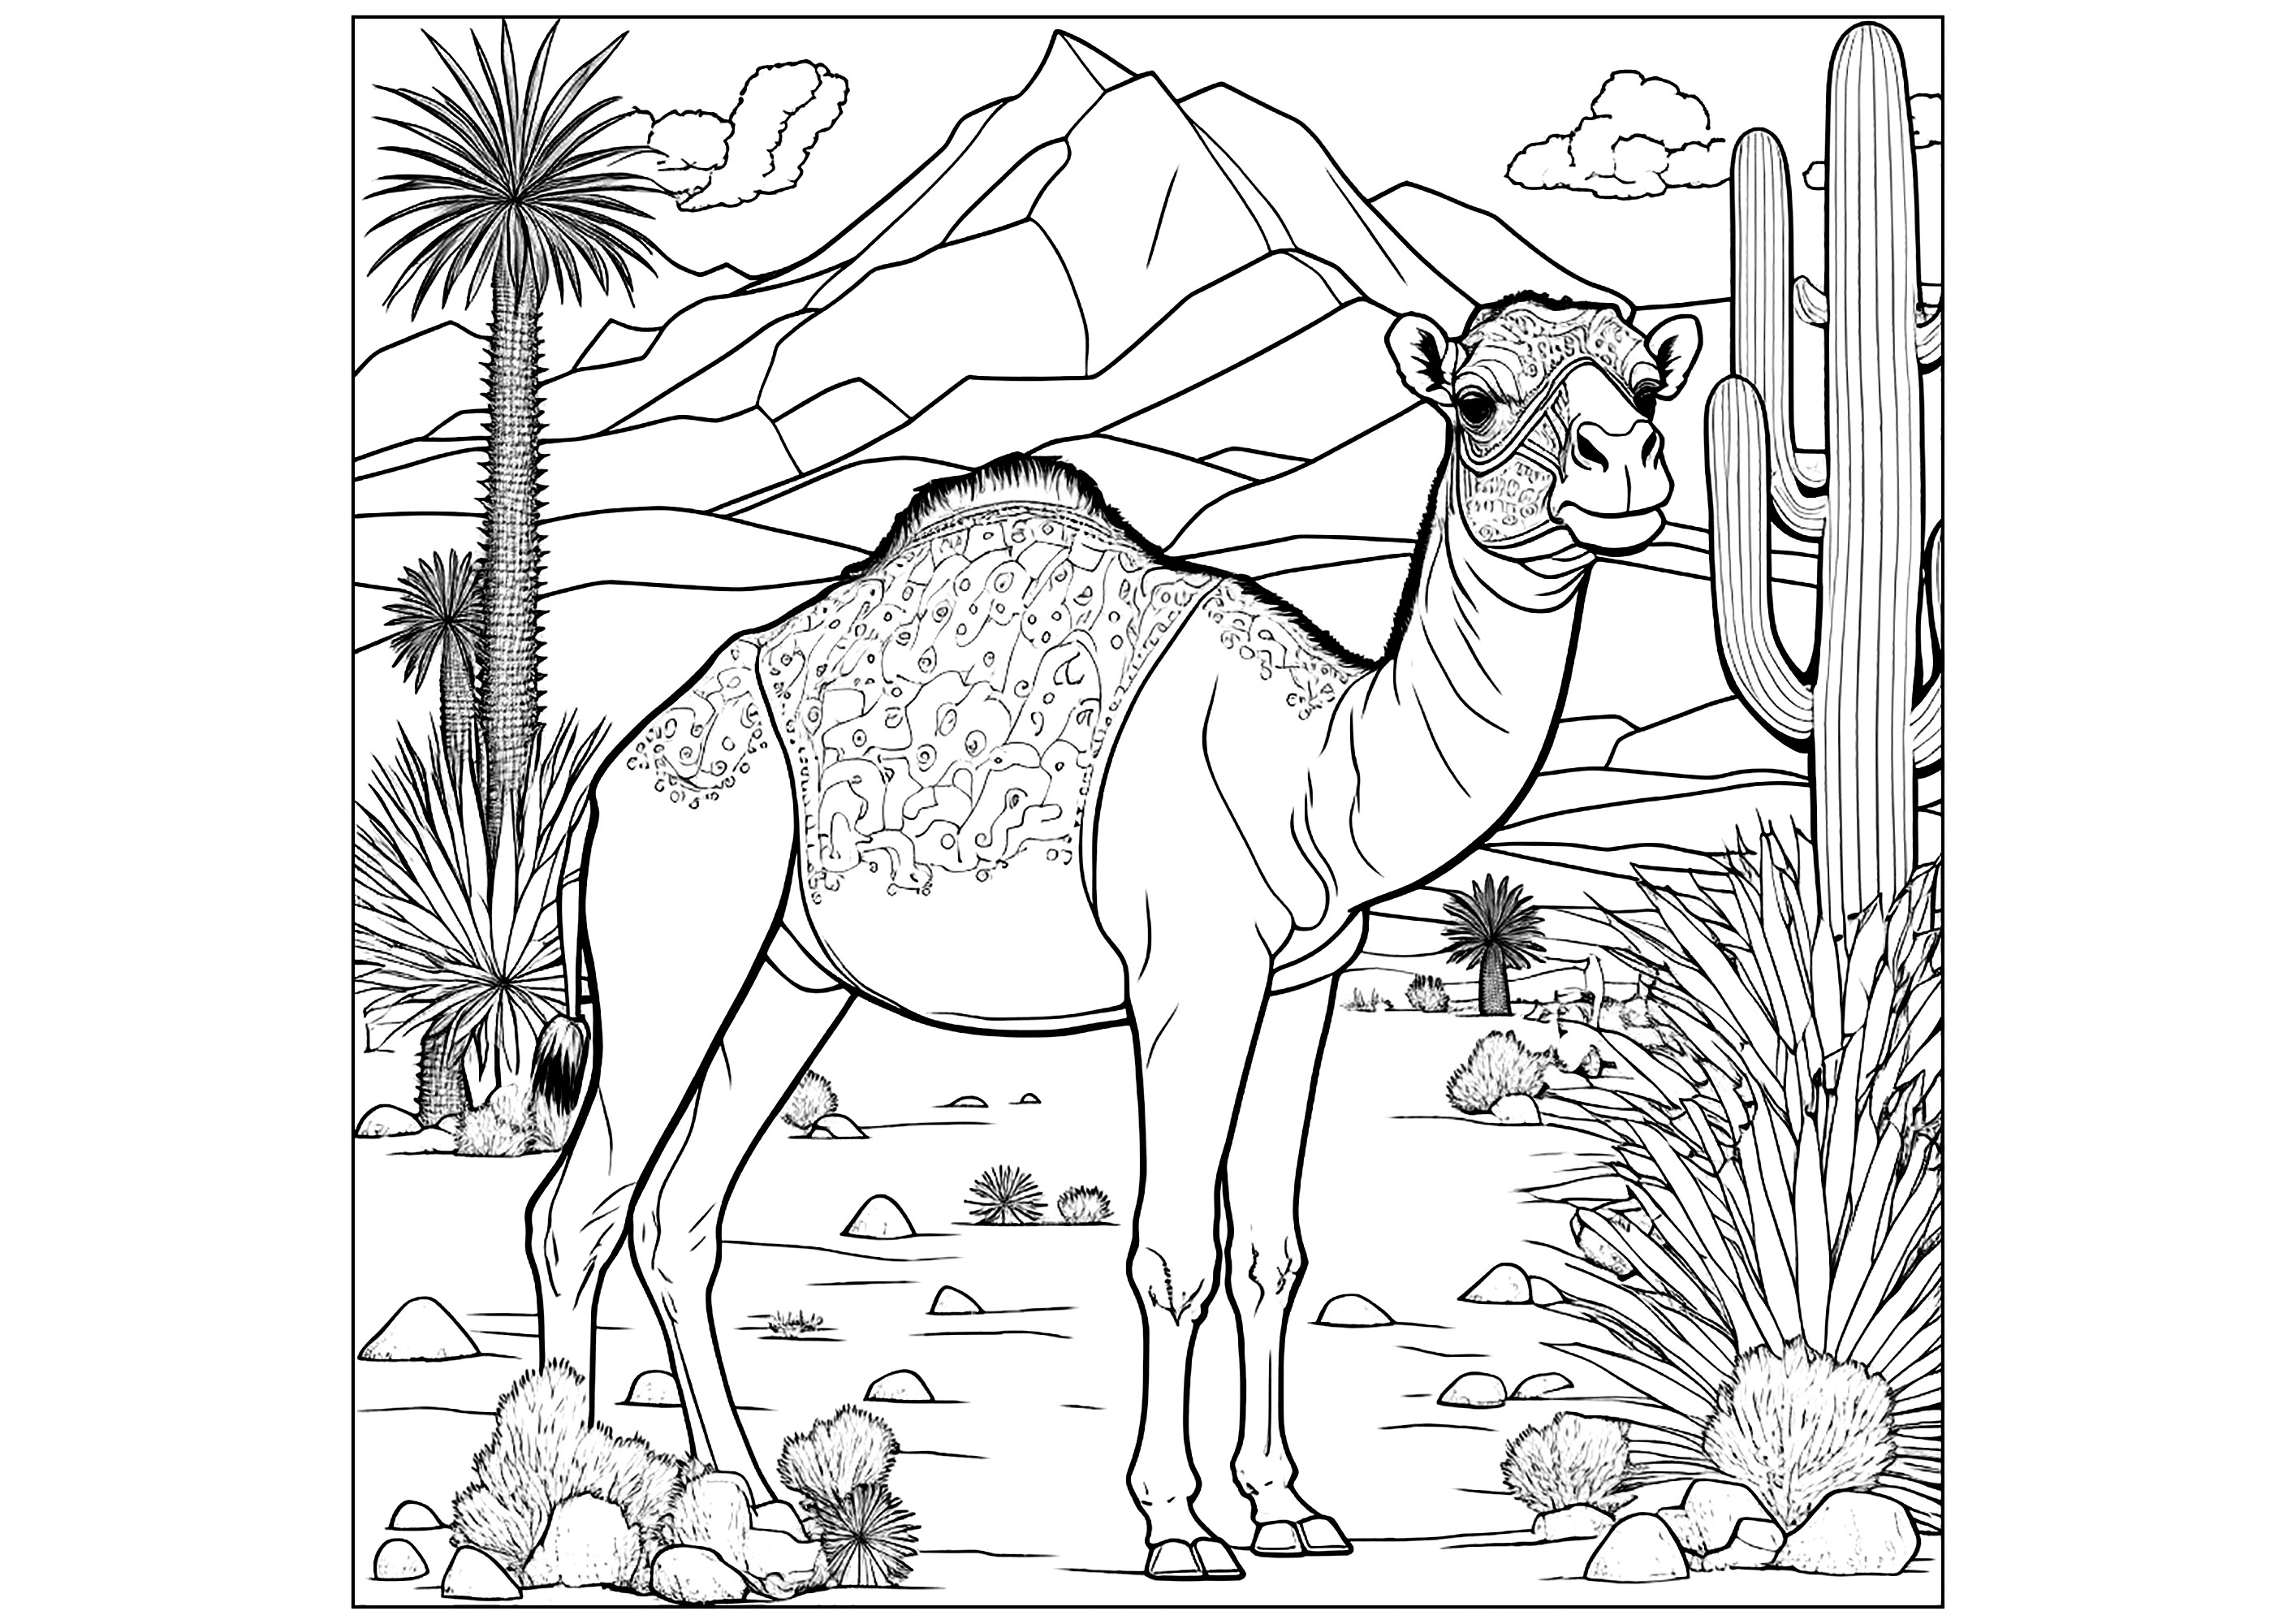 Precioso dromedario para colorear en formato cuadrado. Un dibujo sencillo y divertido con líneas claras y muchos detalles para colorear: cactus, montañas, etc.